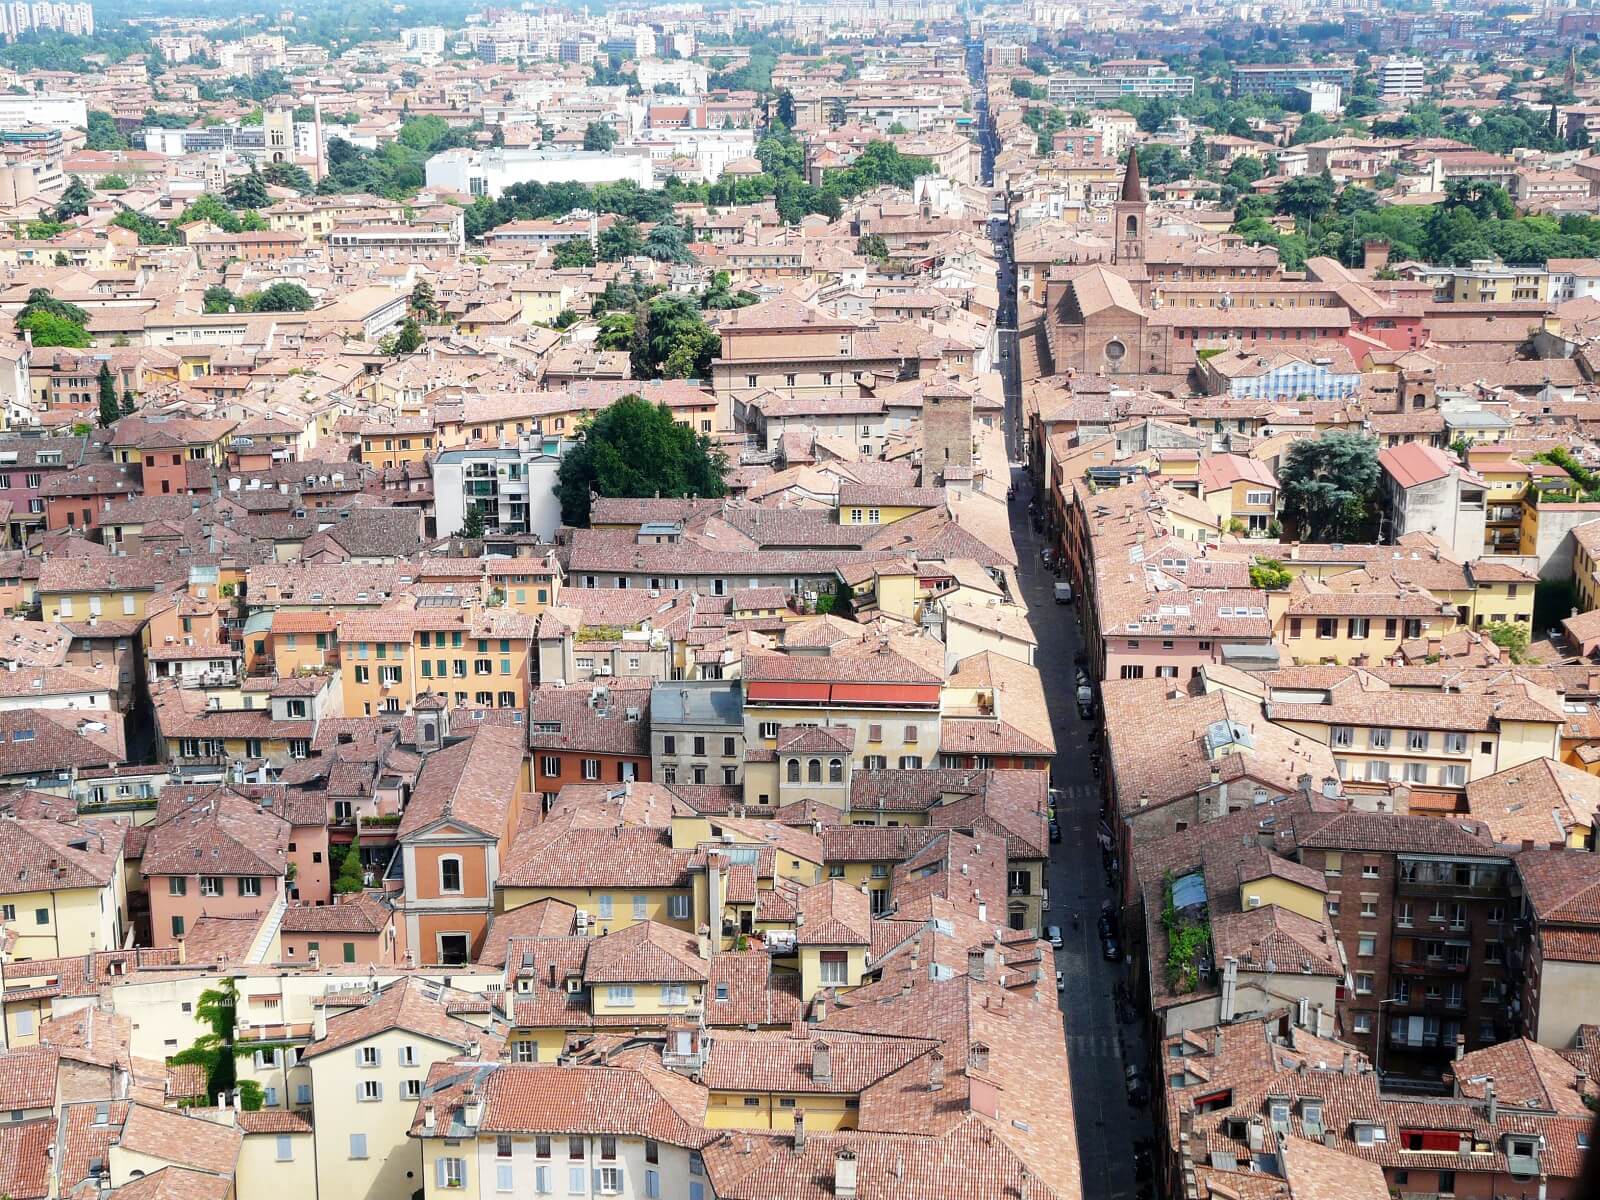 Bezienswaardigheden Bologna - Toren Asinelli en de Due Torri